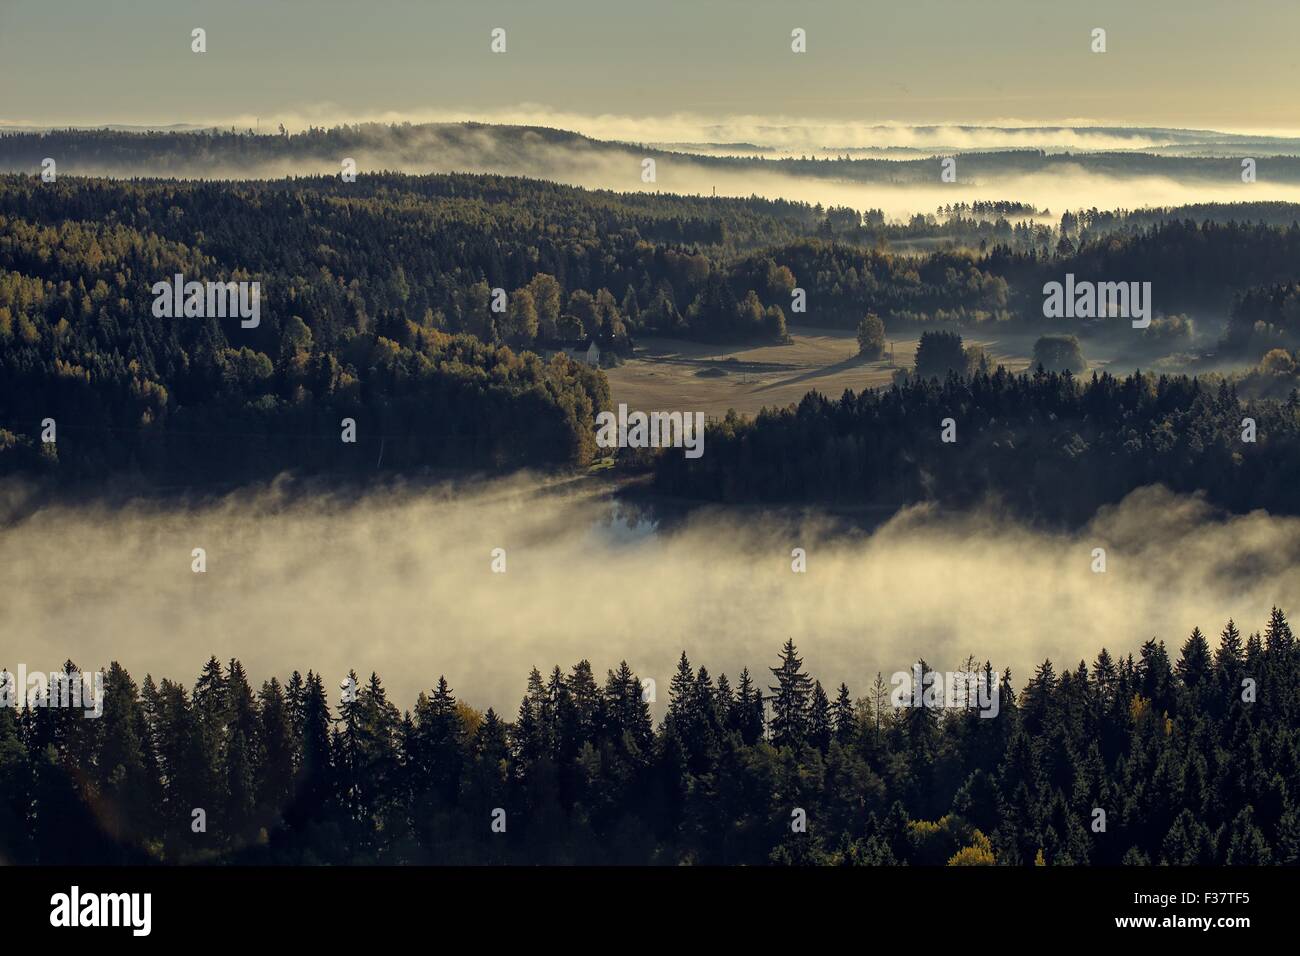 Tranquillo paesaggio di Aulanko riserva naturale parco in Finlandia. Una fitta nebbia che copre il paesaggio nelle prime ore del mattino. Immagine hdr. Foto Stock